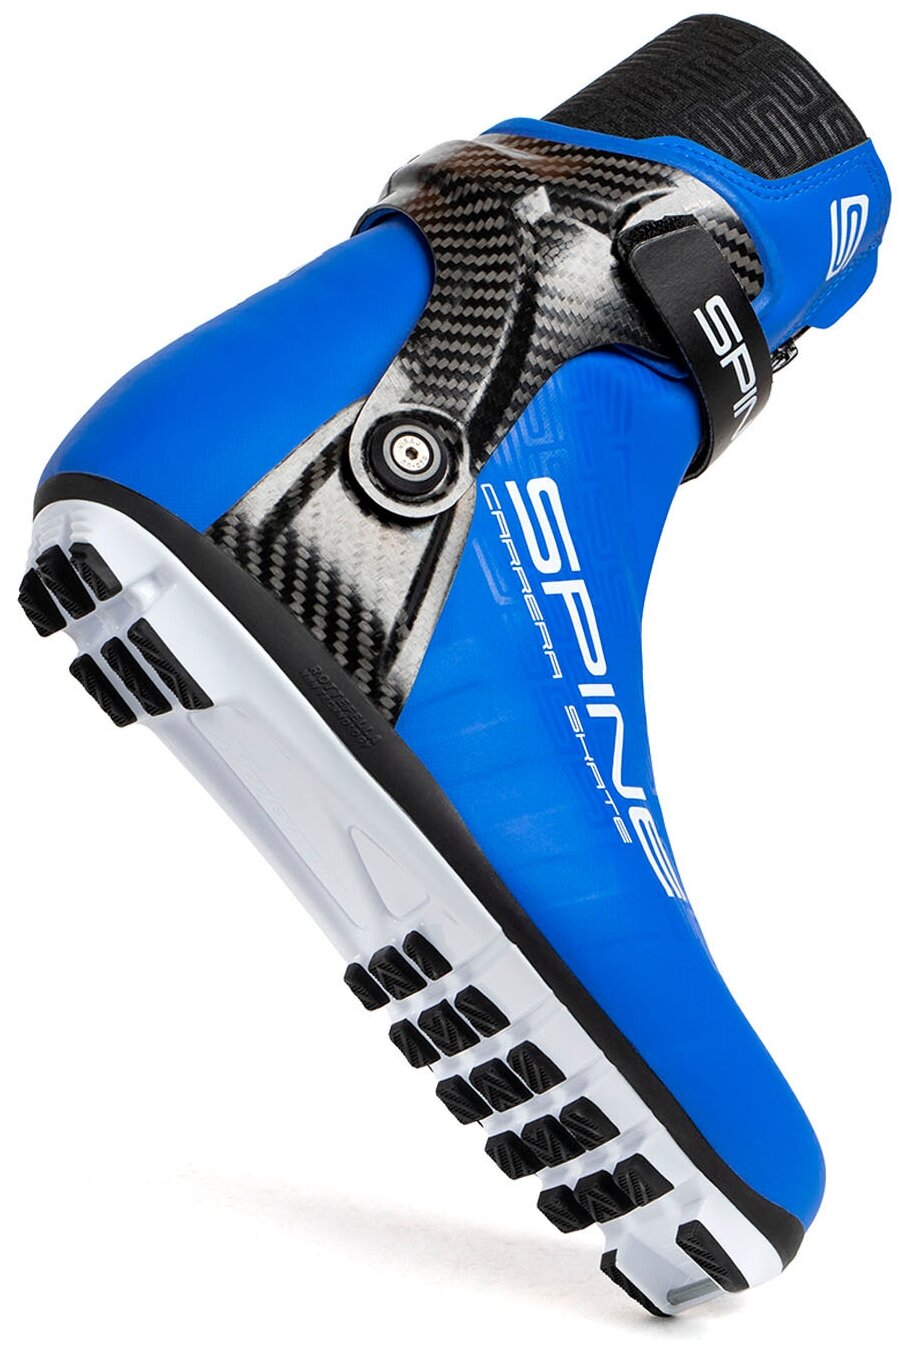 Ботинки для беговых лыж Spine Concept Skate PRO, Синий, размер 37.5 - фото №3